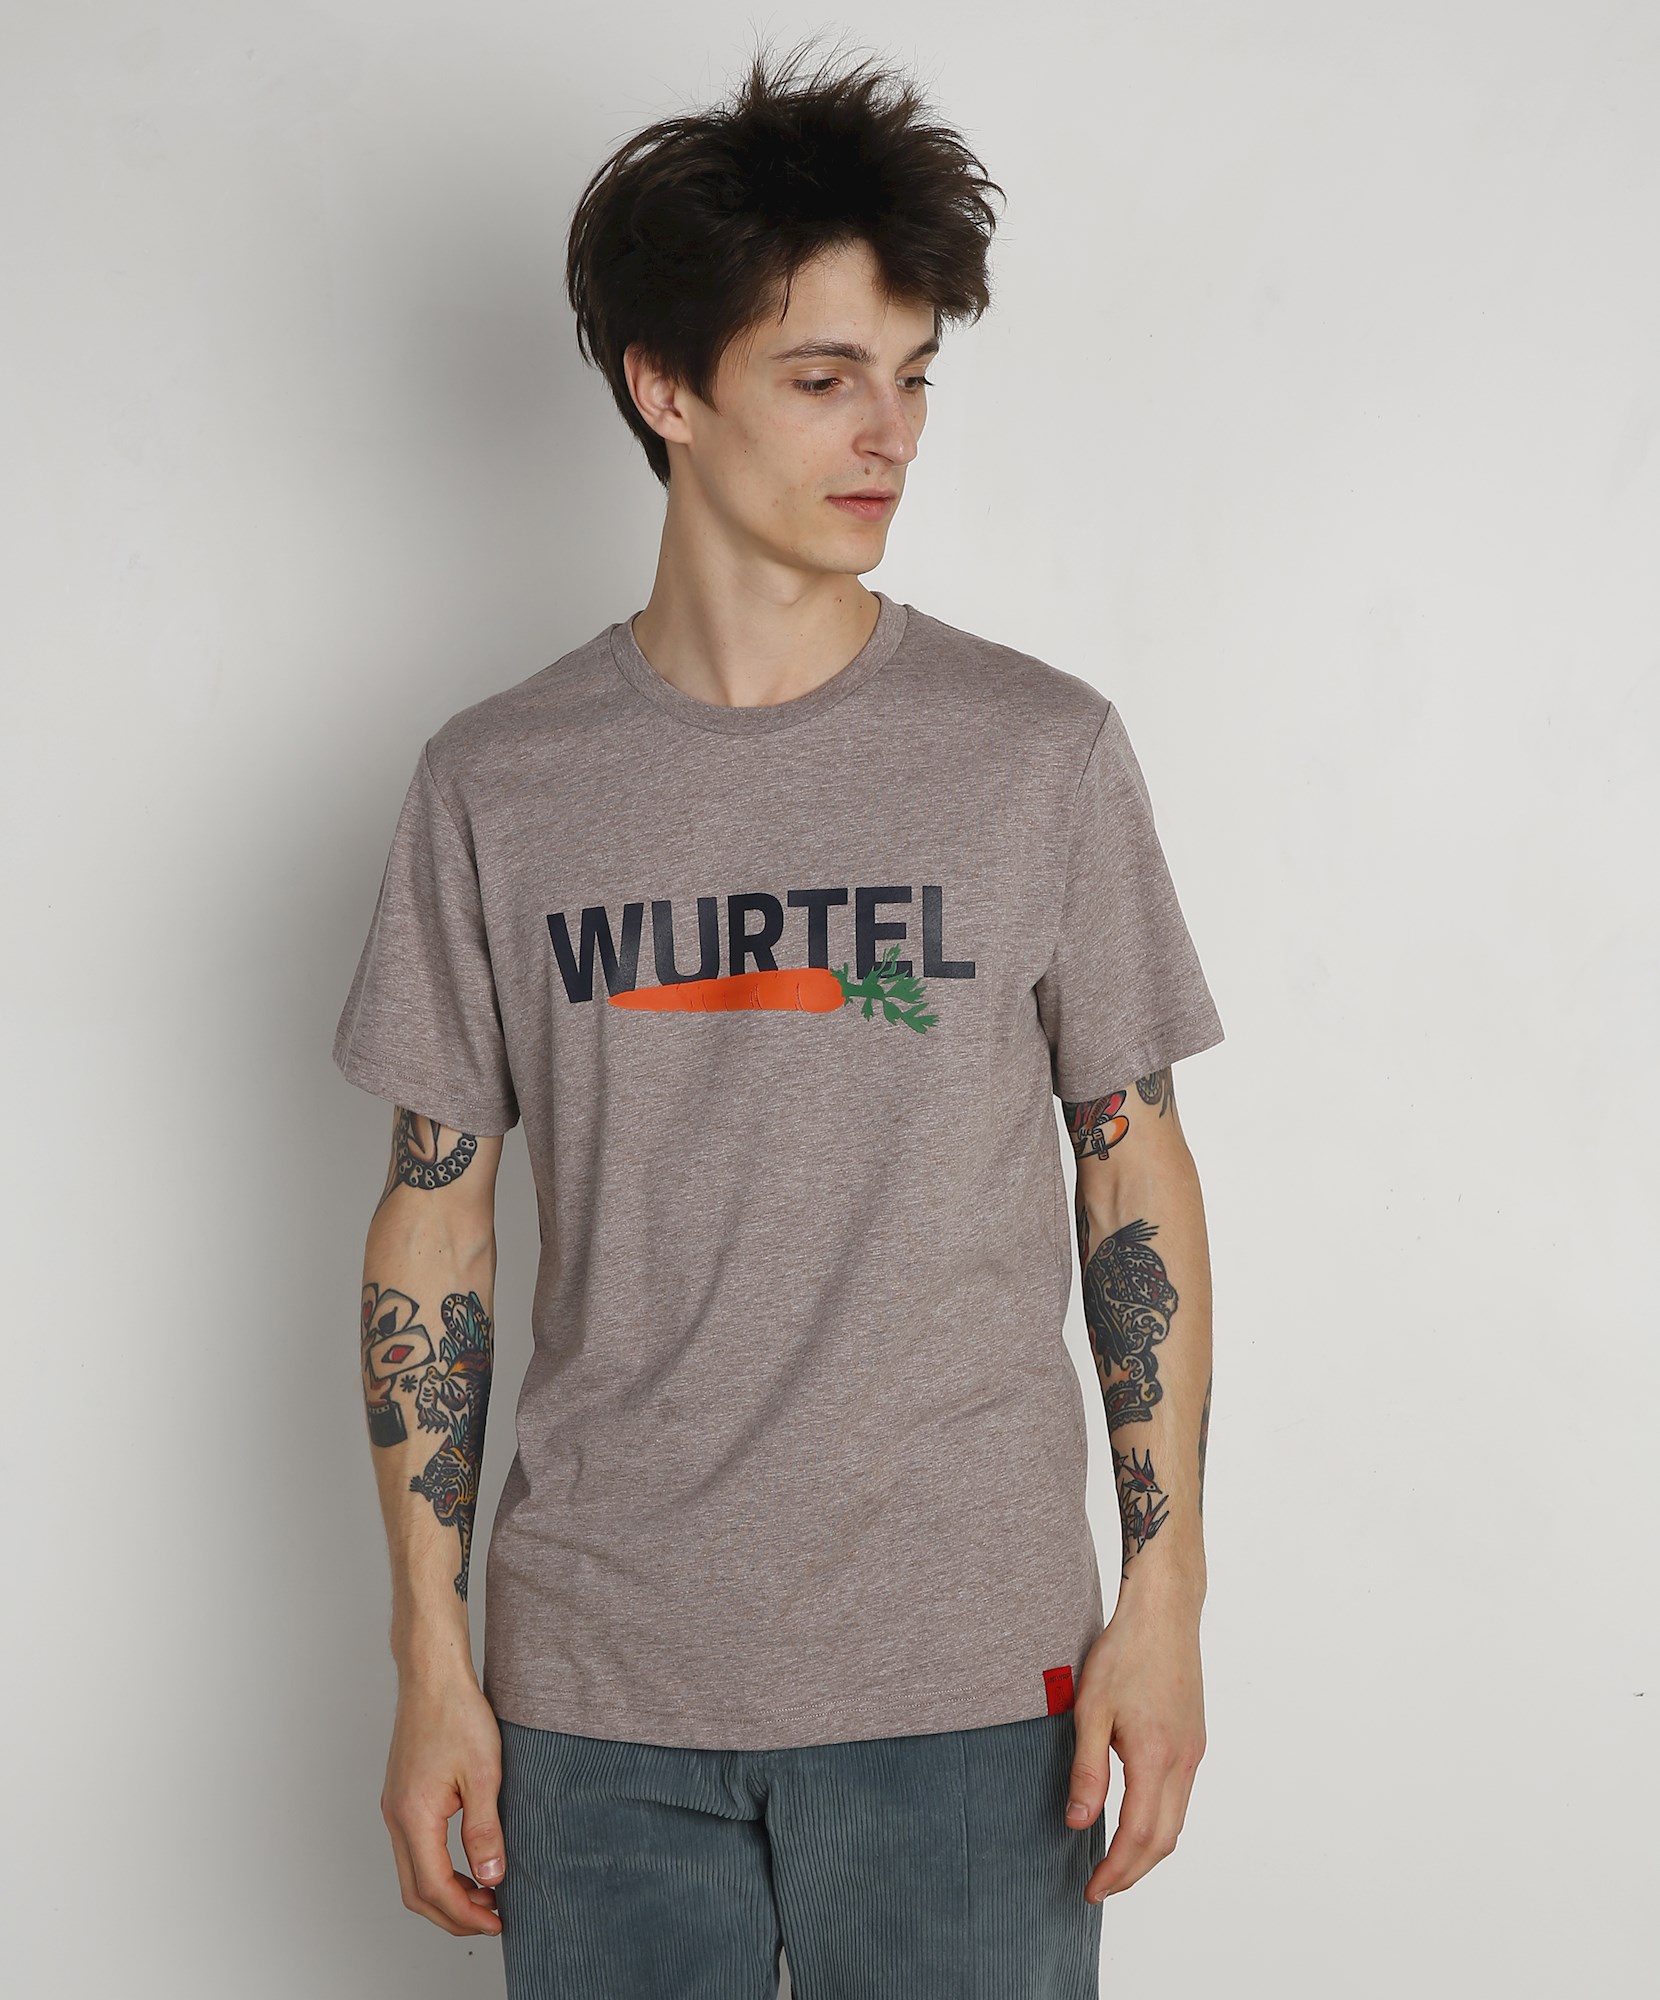 De kamer schoonmaken Koken resultaat Wurtel organic shirt Antwrp - Crapule de Luxe